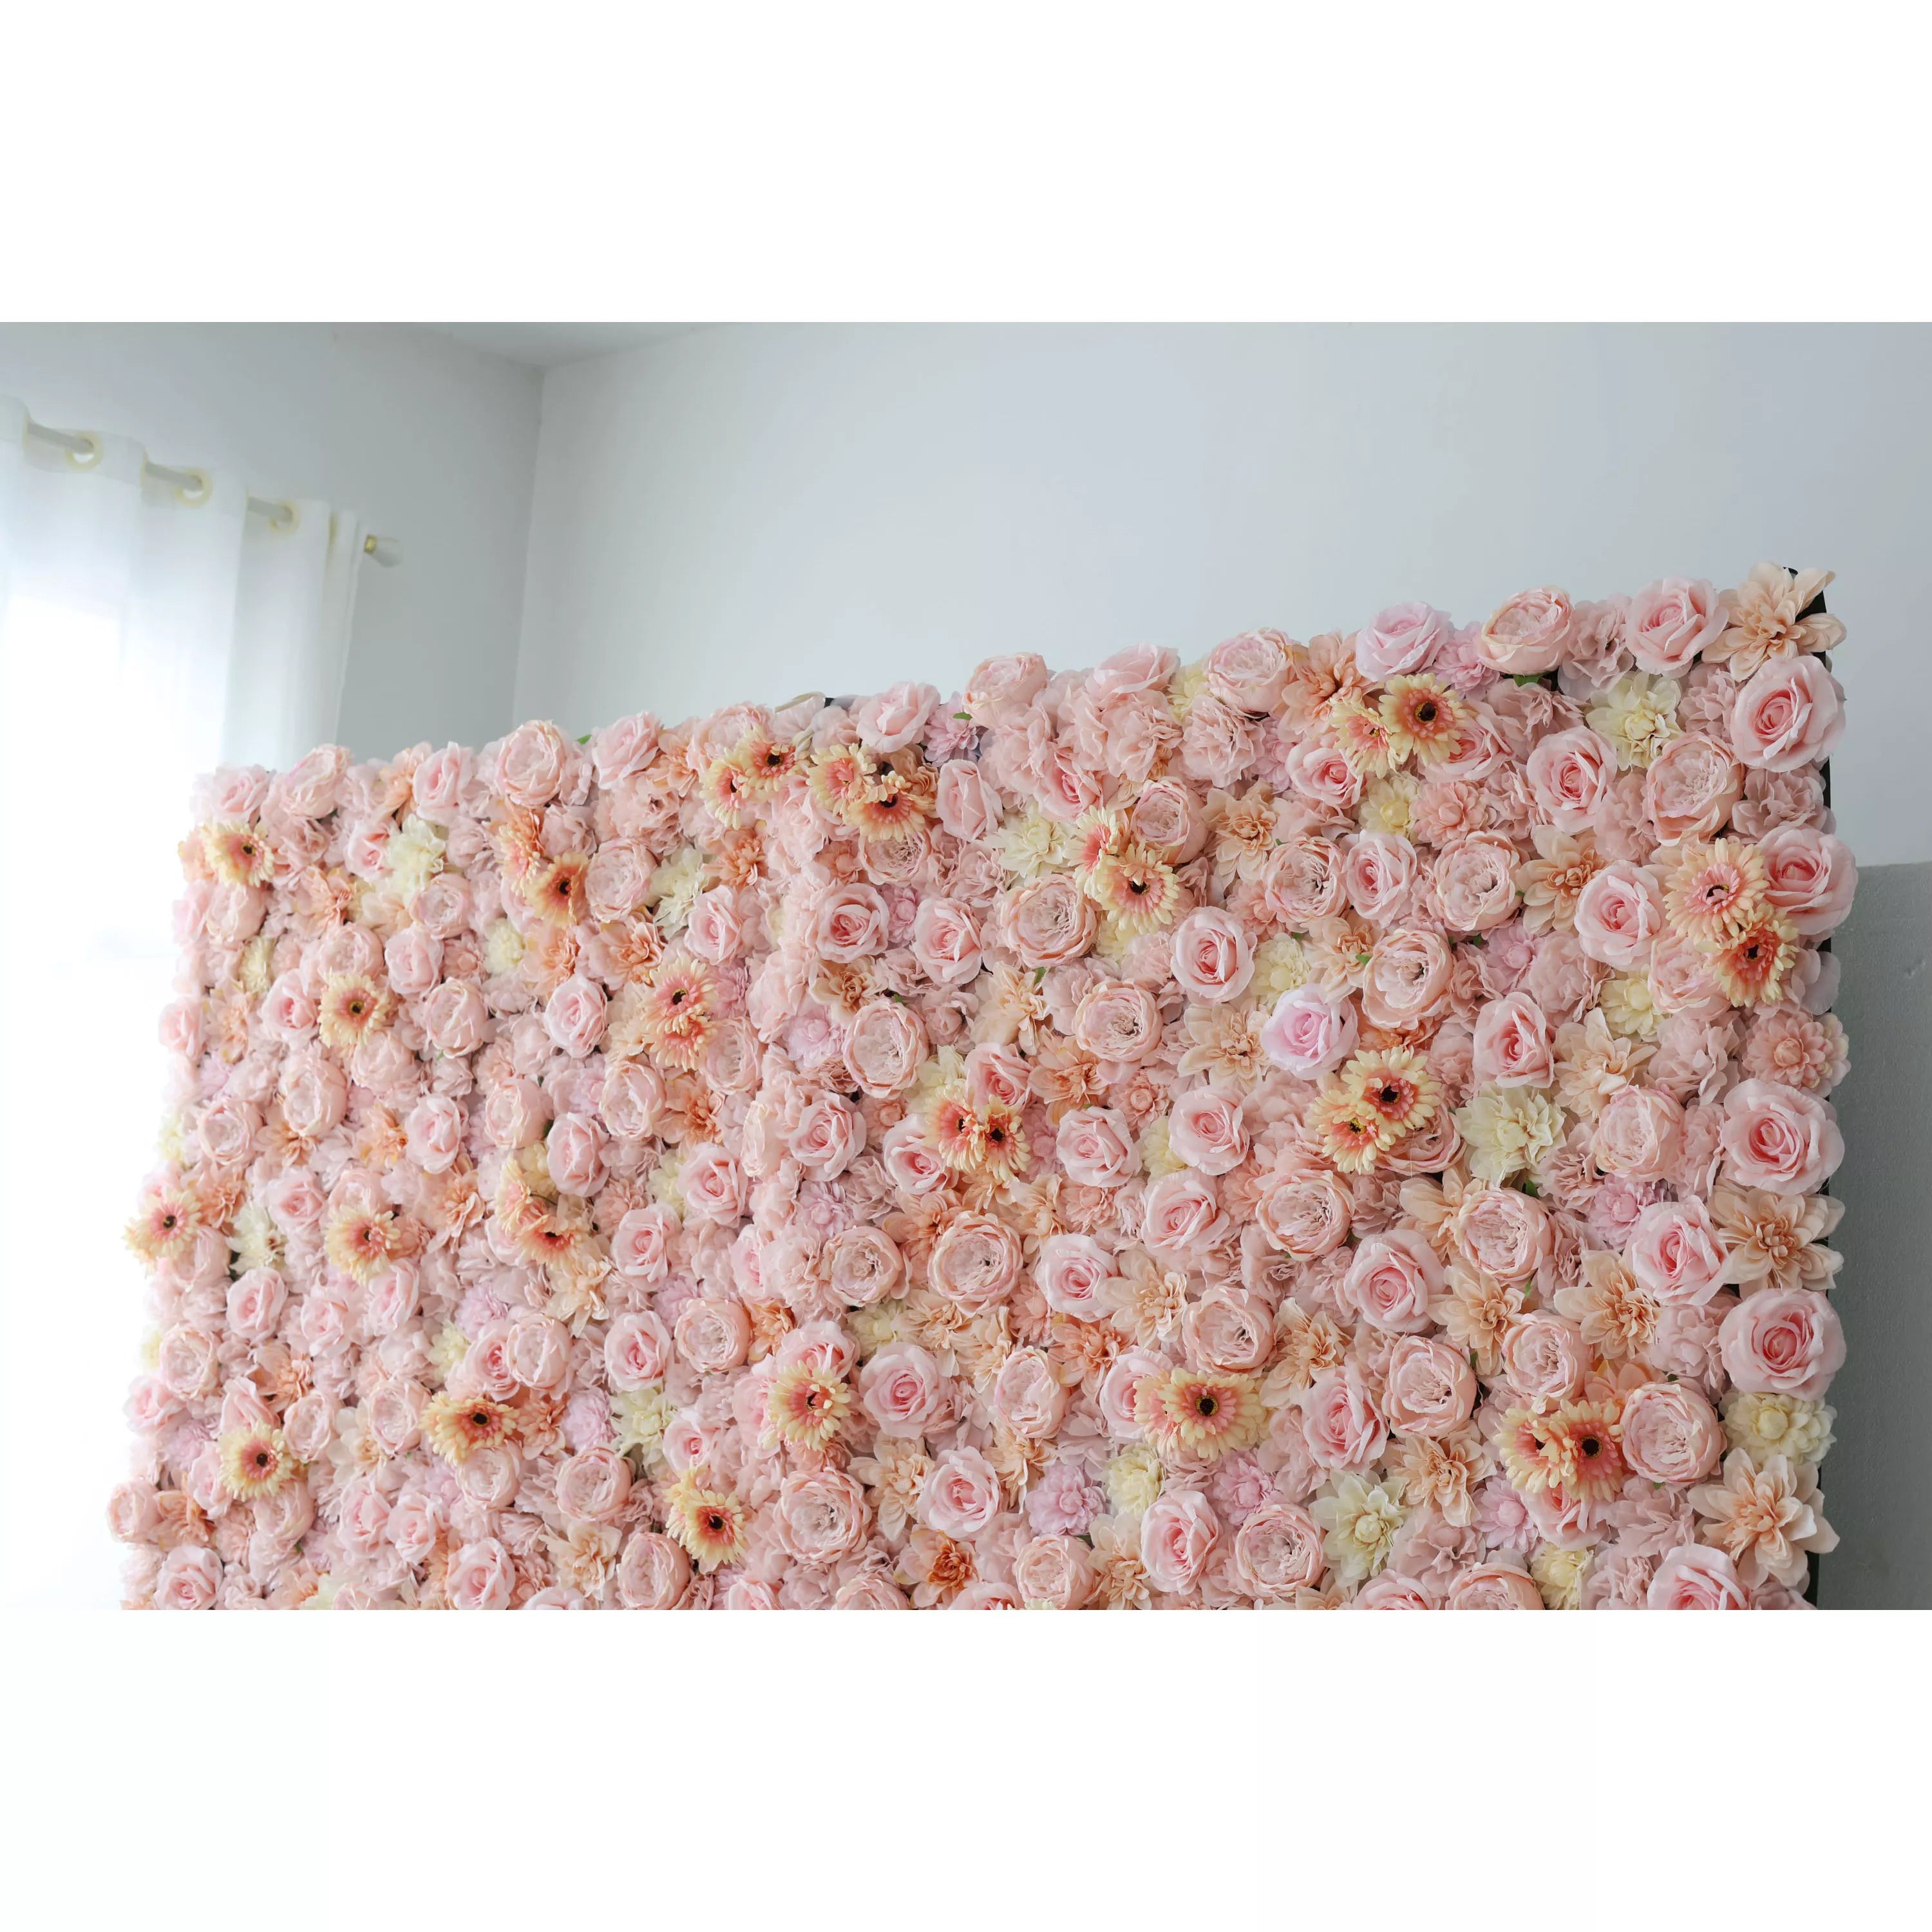 Valar Flowers Roll Up Toile de fond murale de fleurs artificielles : perfection pastel – Un pays des merveilles fantaisiste de teintes douces et de beauté douce-VF-238